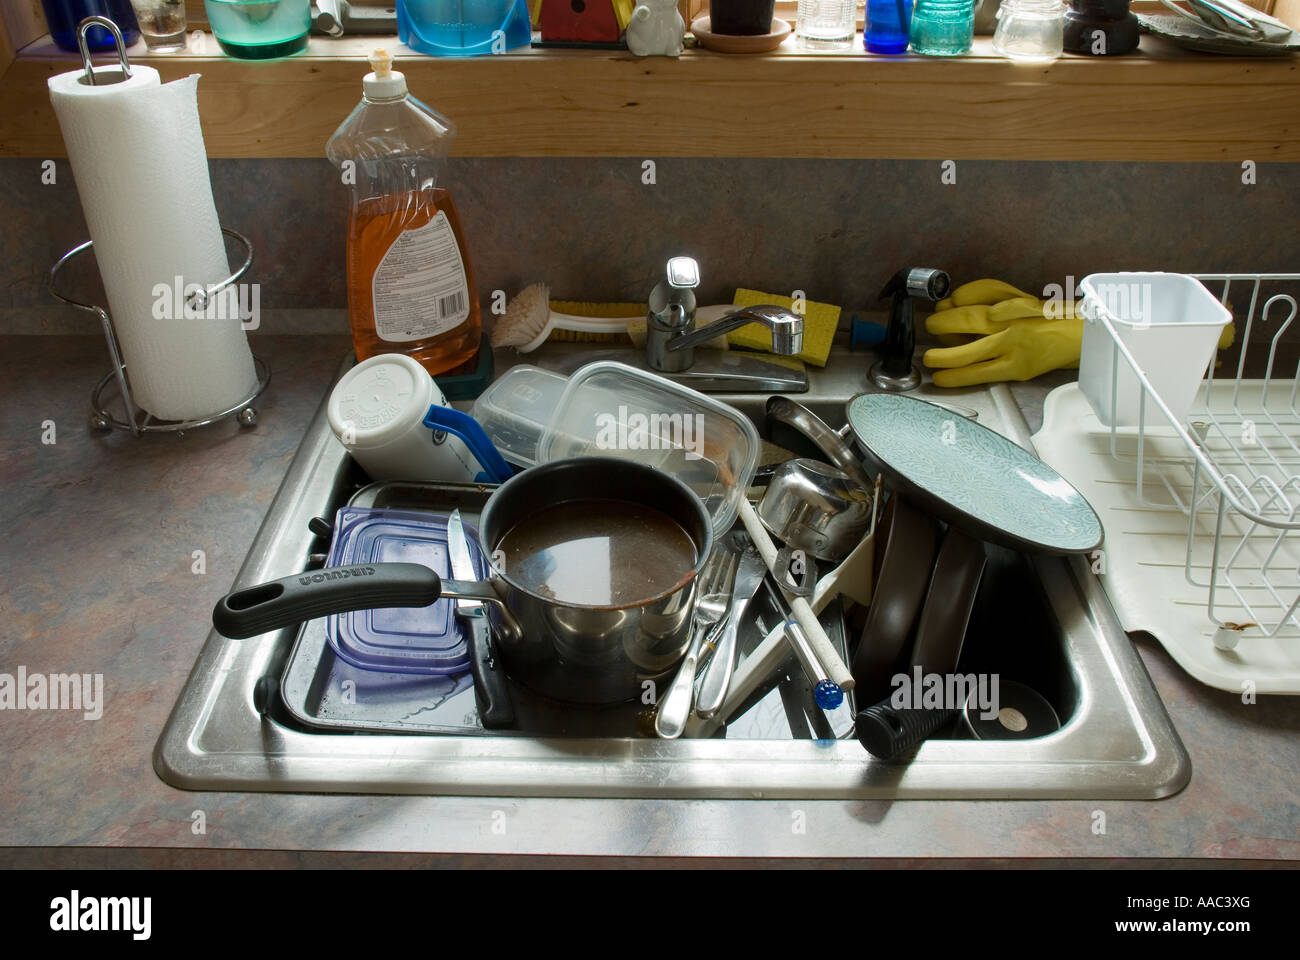 Come pila di piatti sporchi in un lavello da cucina Foto Stock